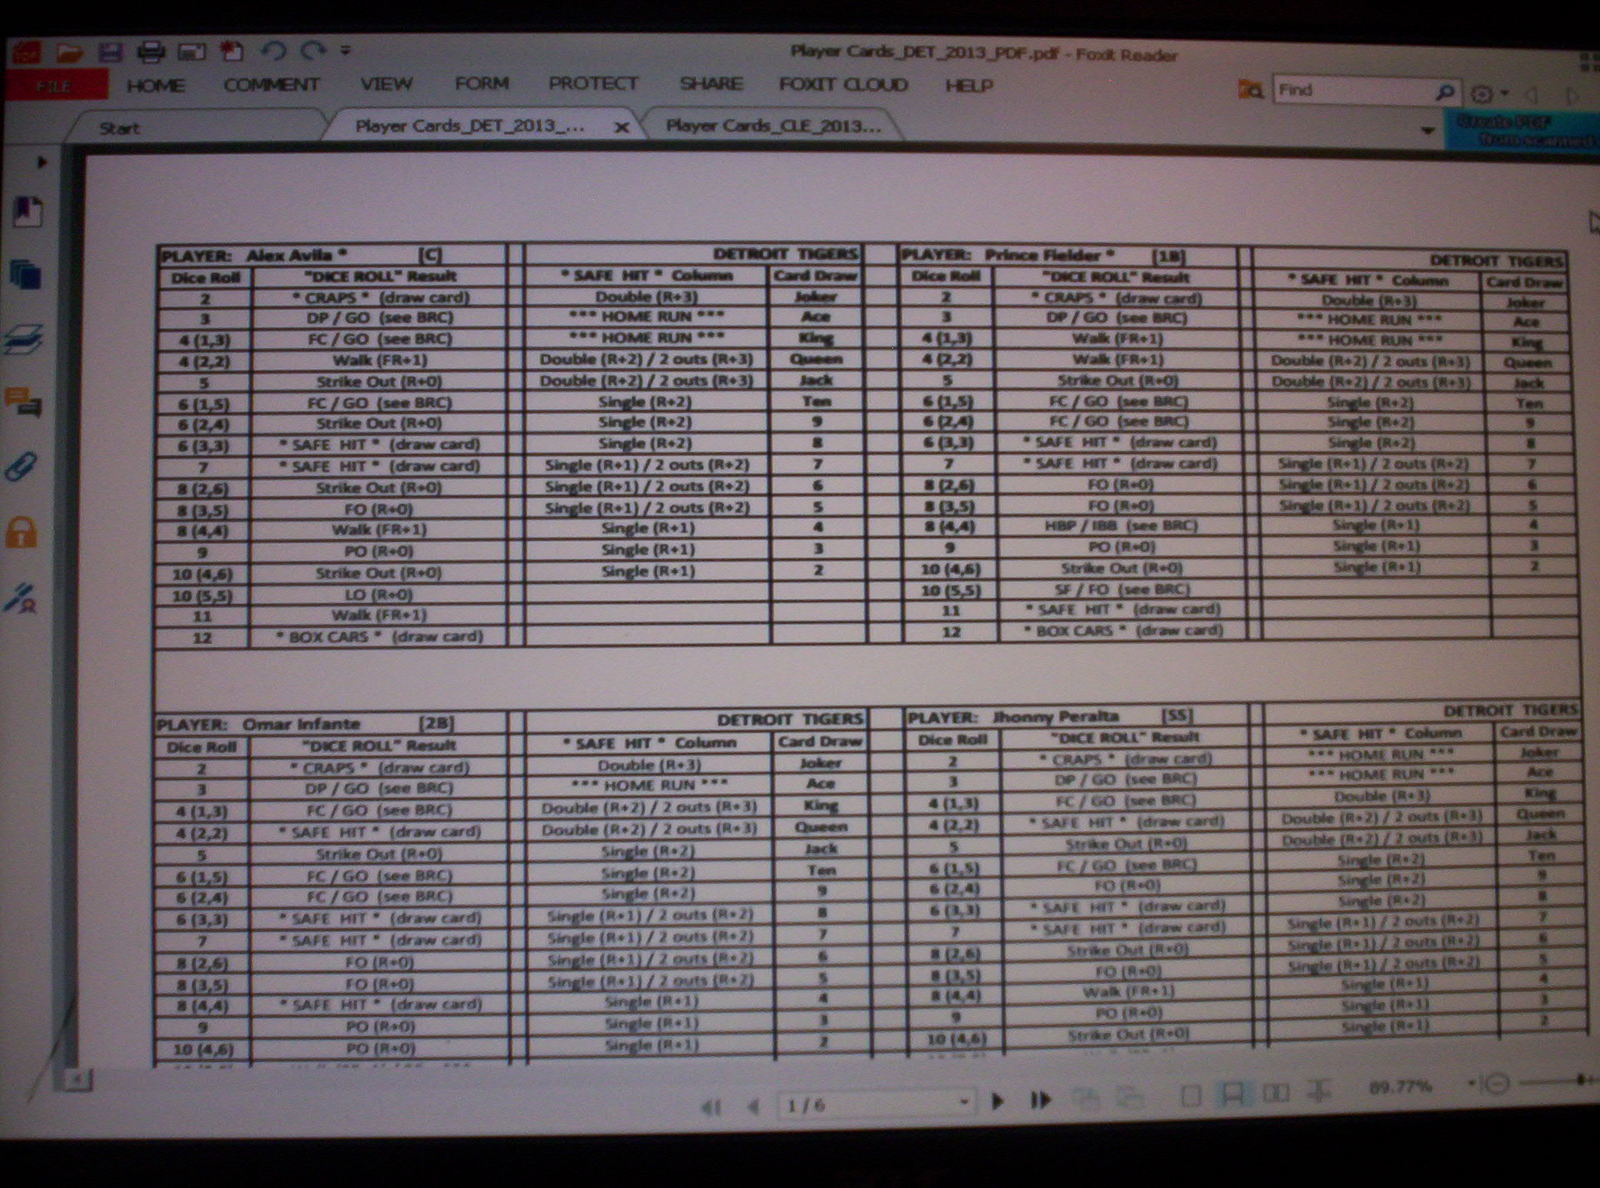 strat-o-matic-baseball-score-sheets-pdf-statis-pro-baseball-charts-tiyam-one-blue-20-sided